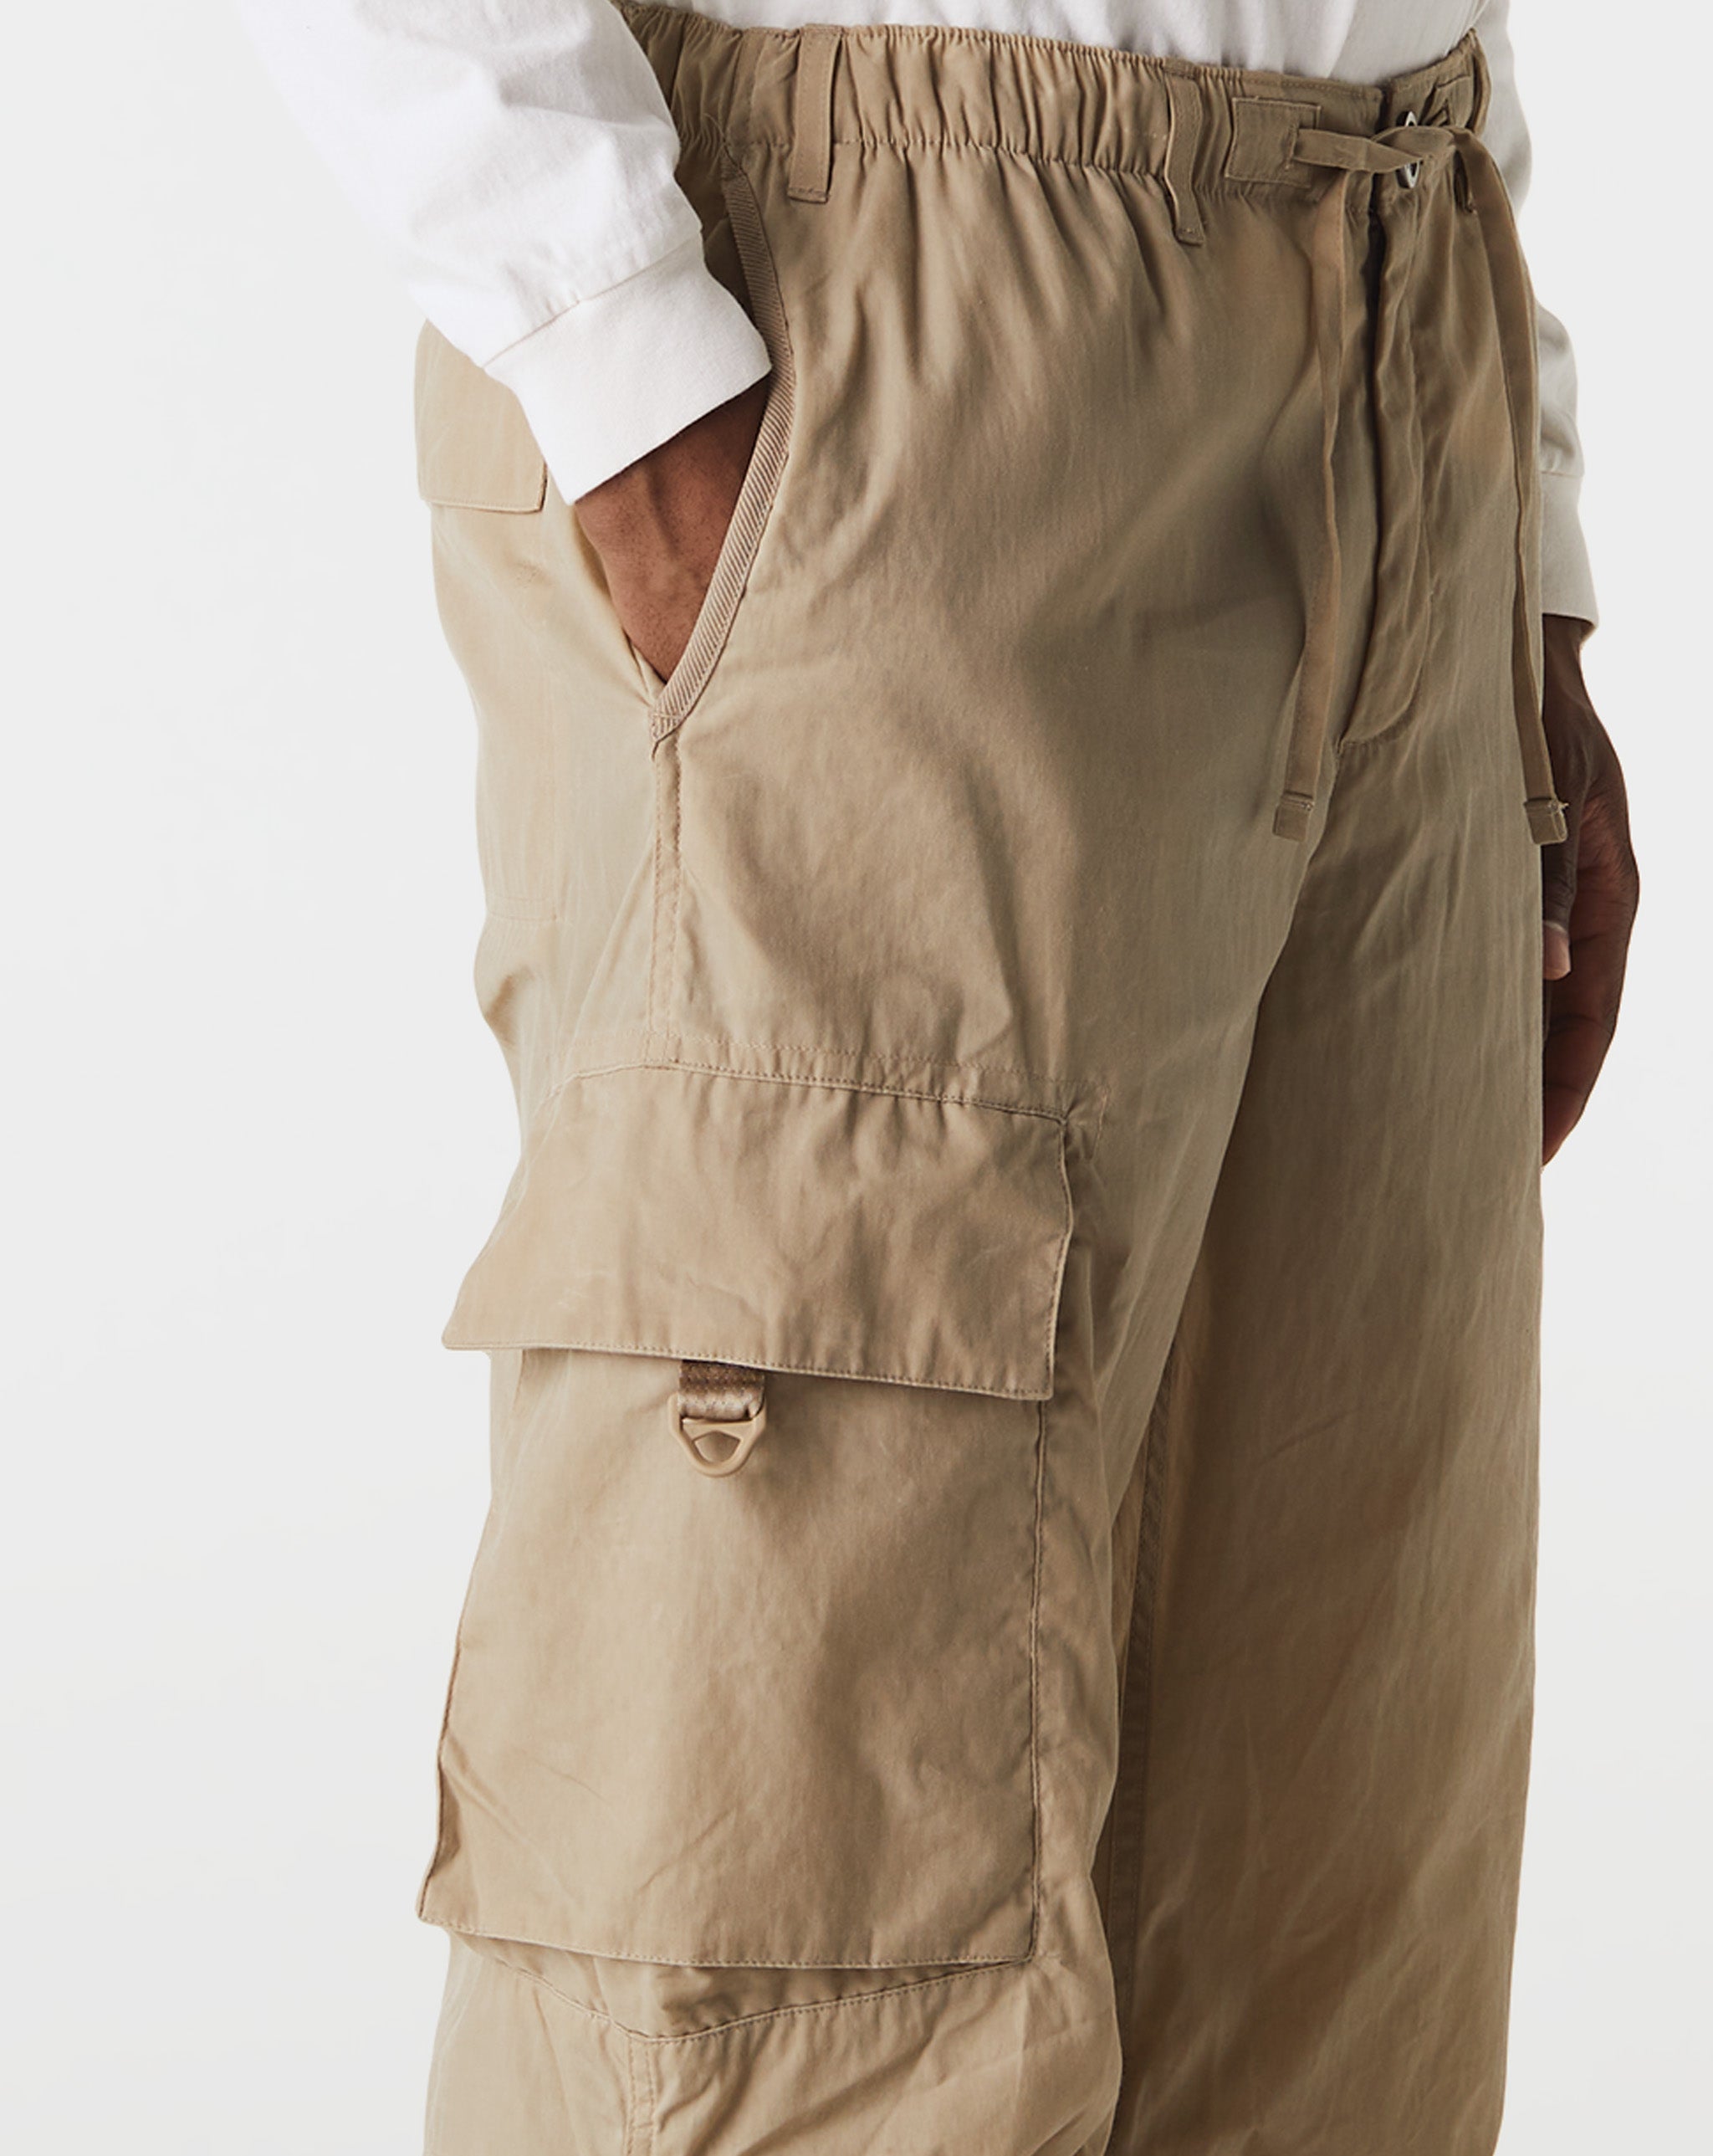 Nike Woolrich tiered sleeveless dress  - Cheap Urlfreeze Jordan outlet